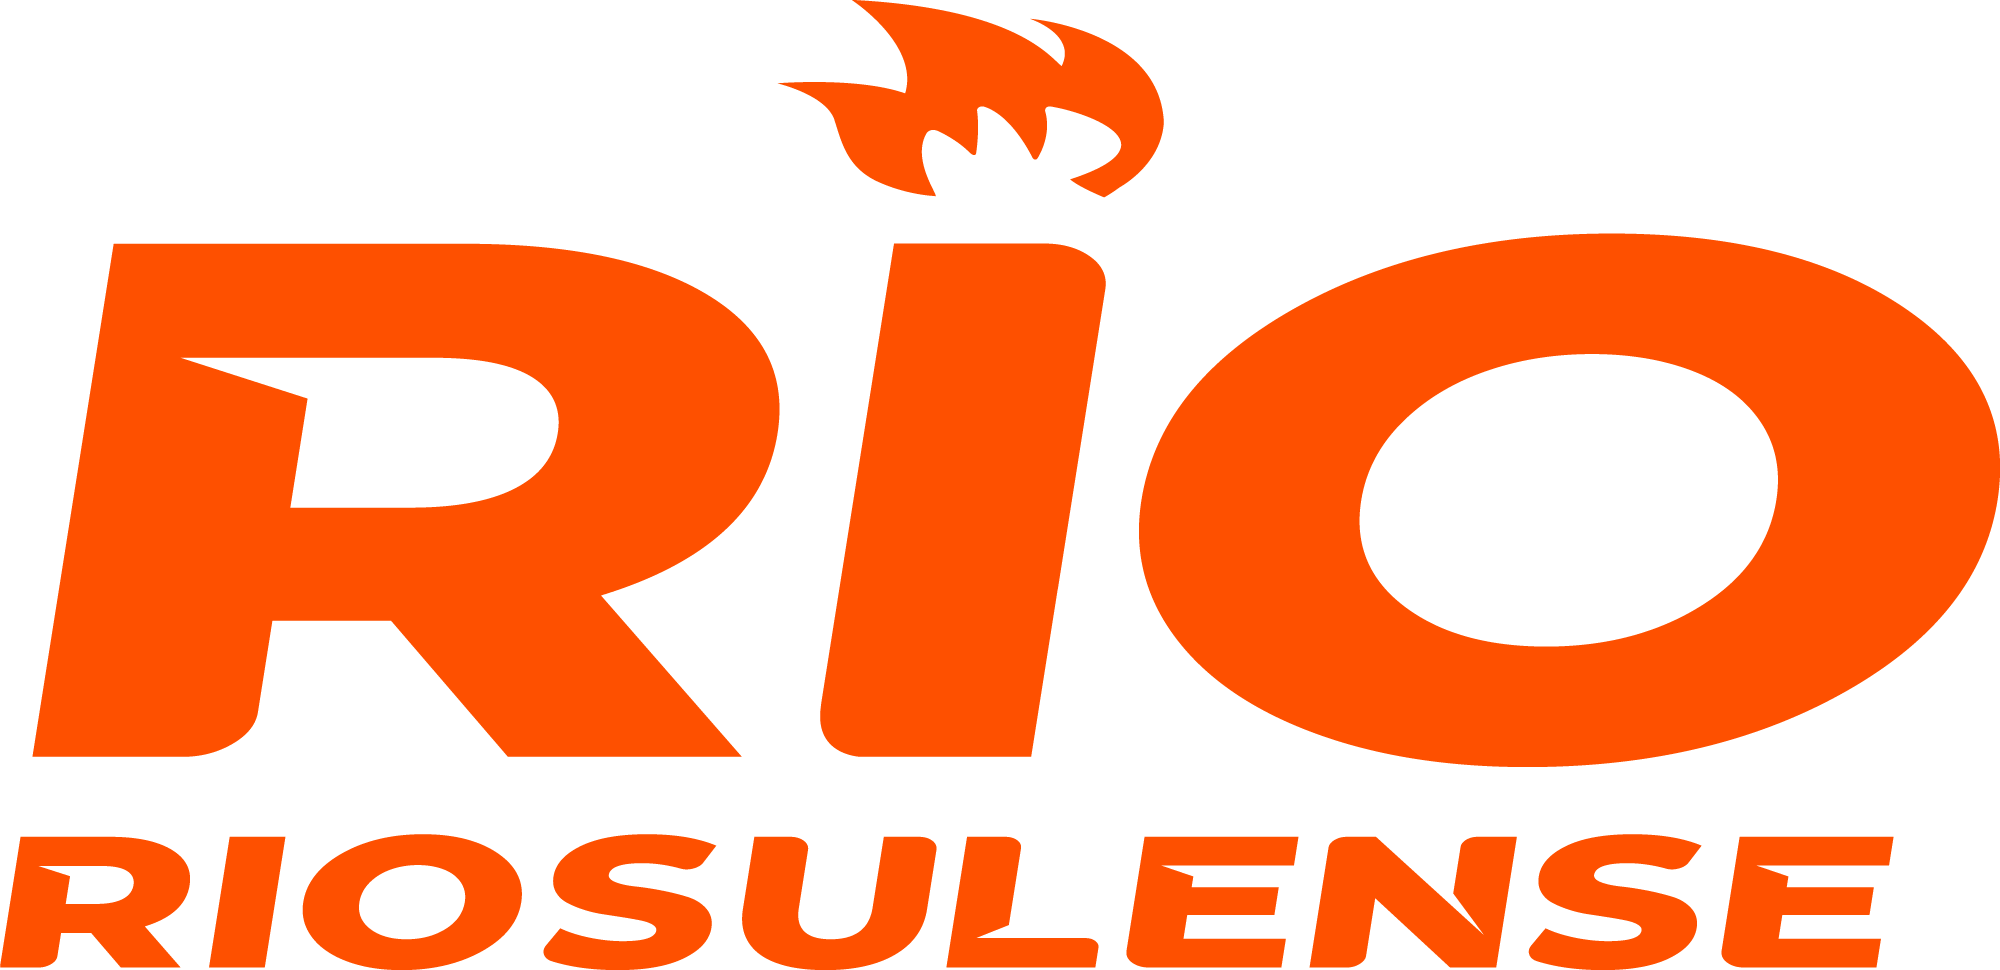 Rio Riosulense